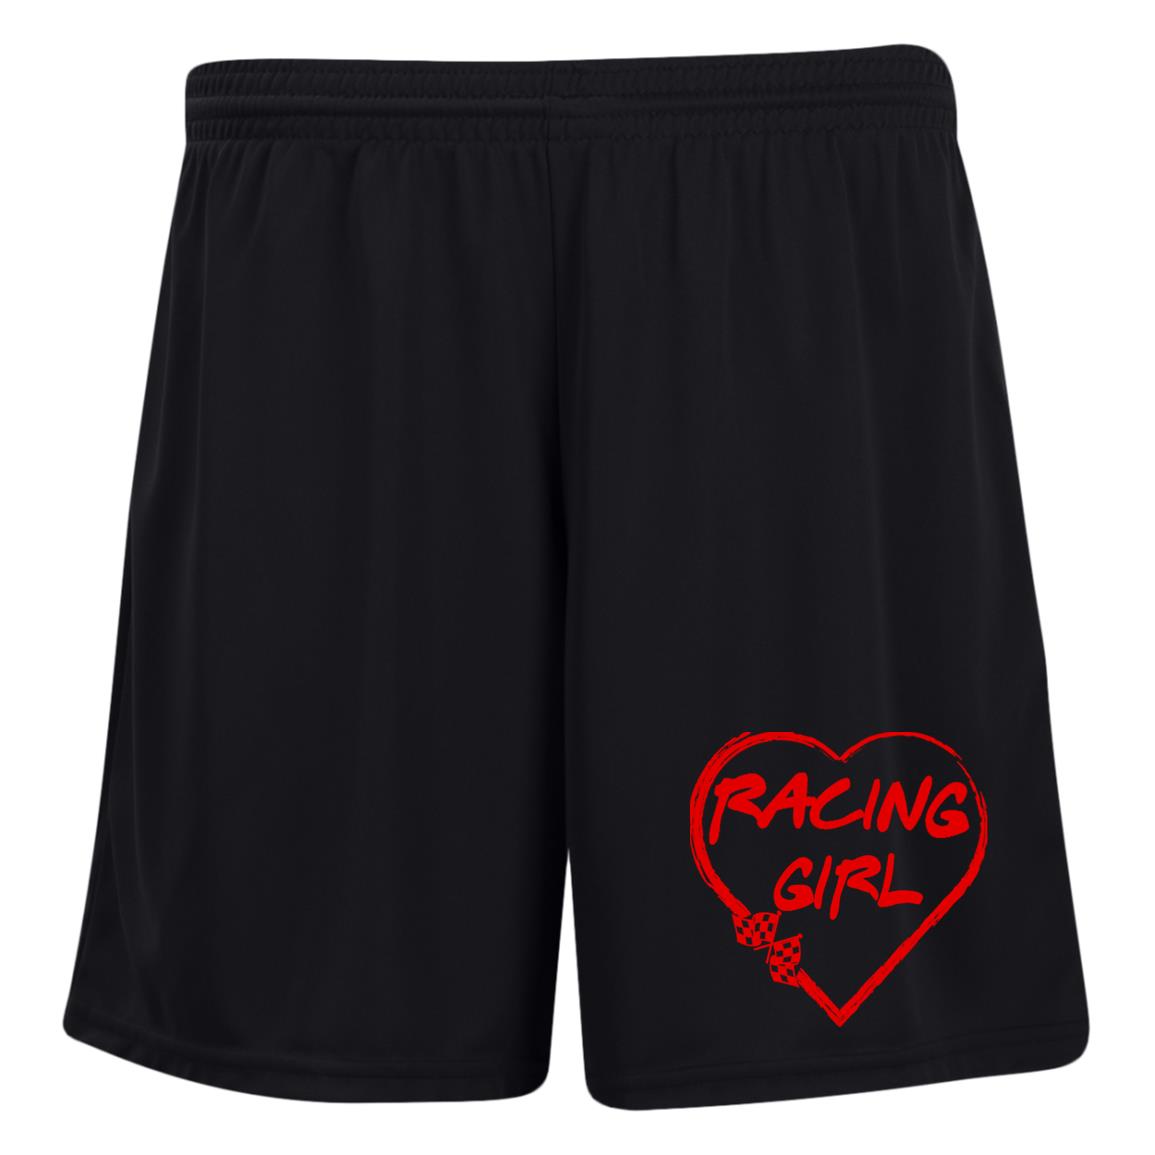 Racing Girl Heart Ladies' Moisture-Wicking 7 inch Inseam Training Shorts